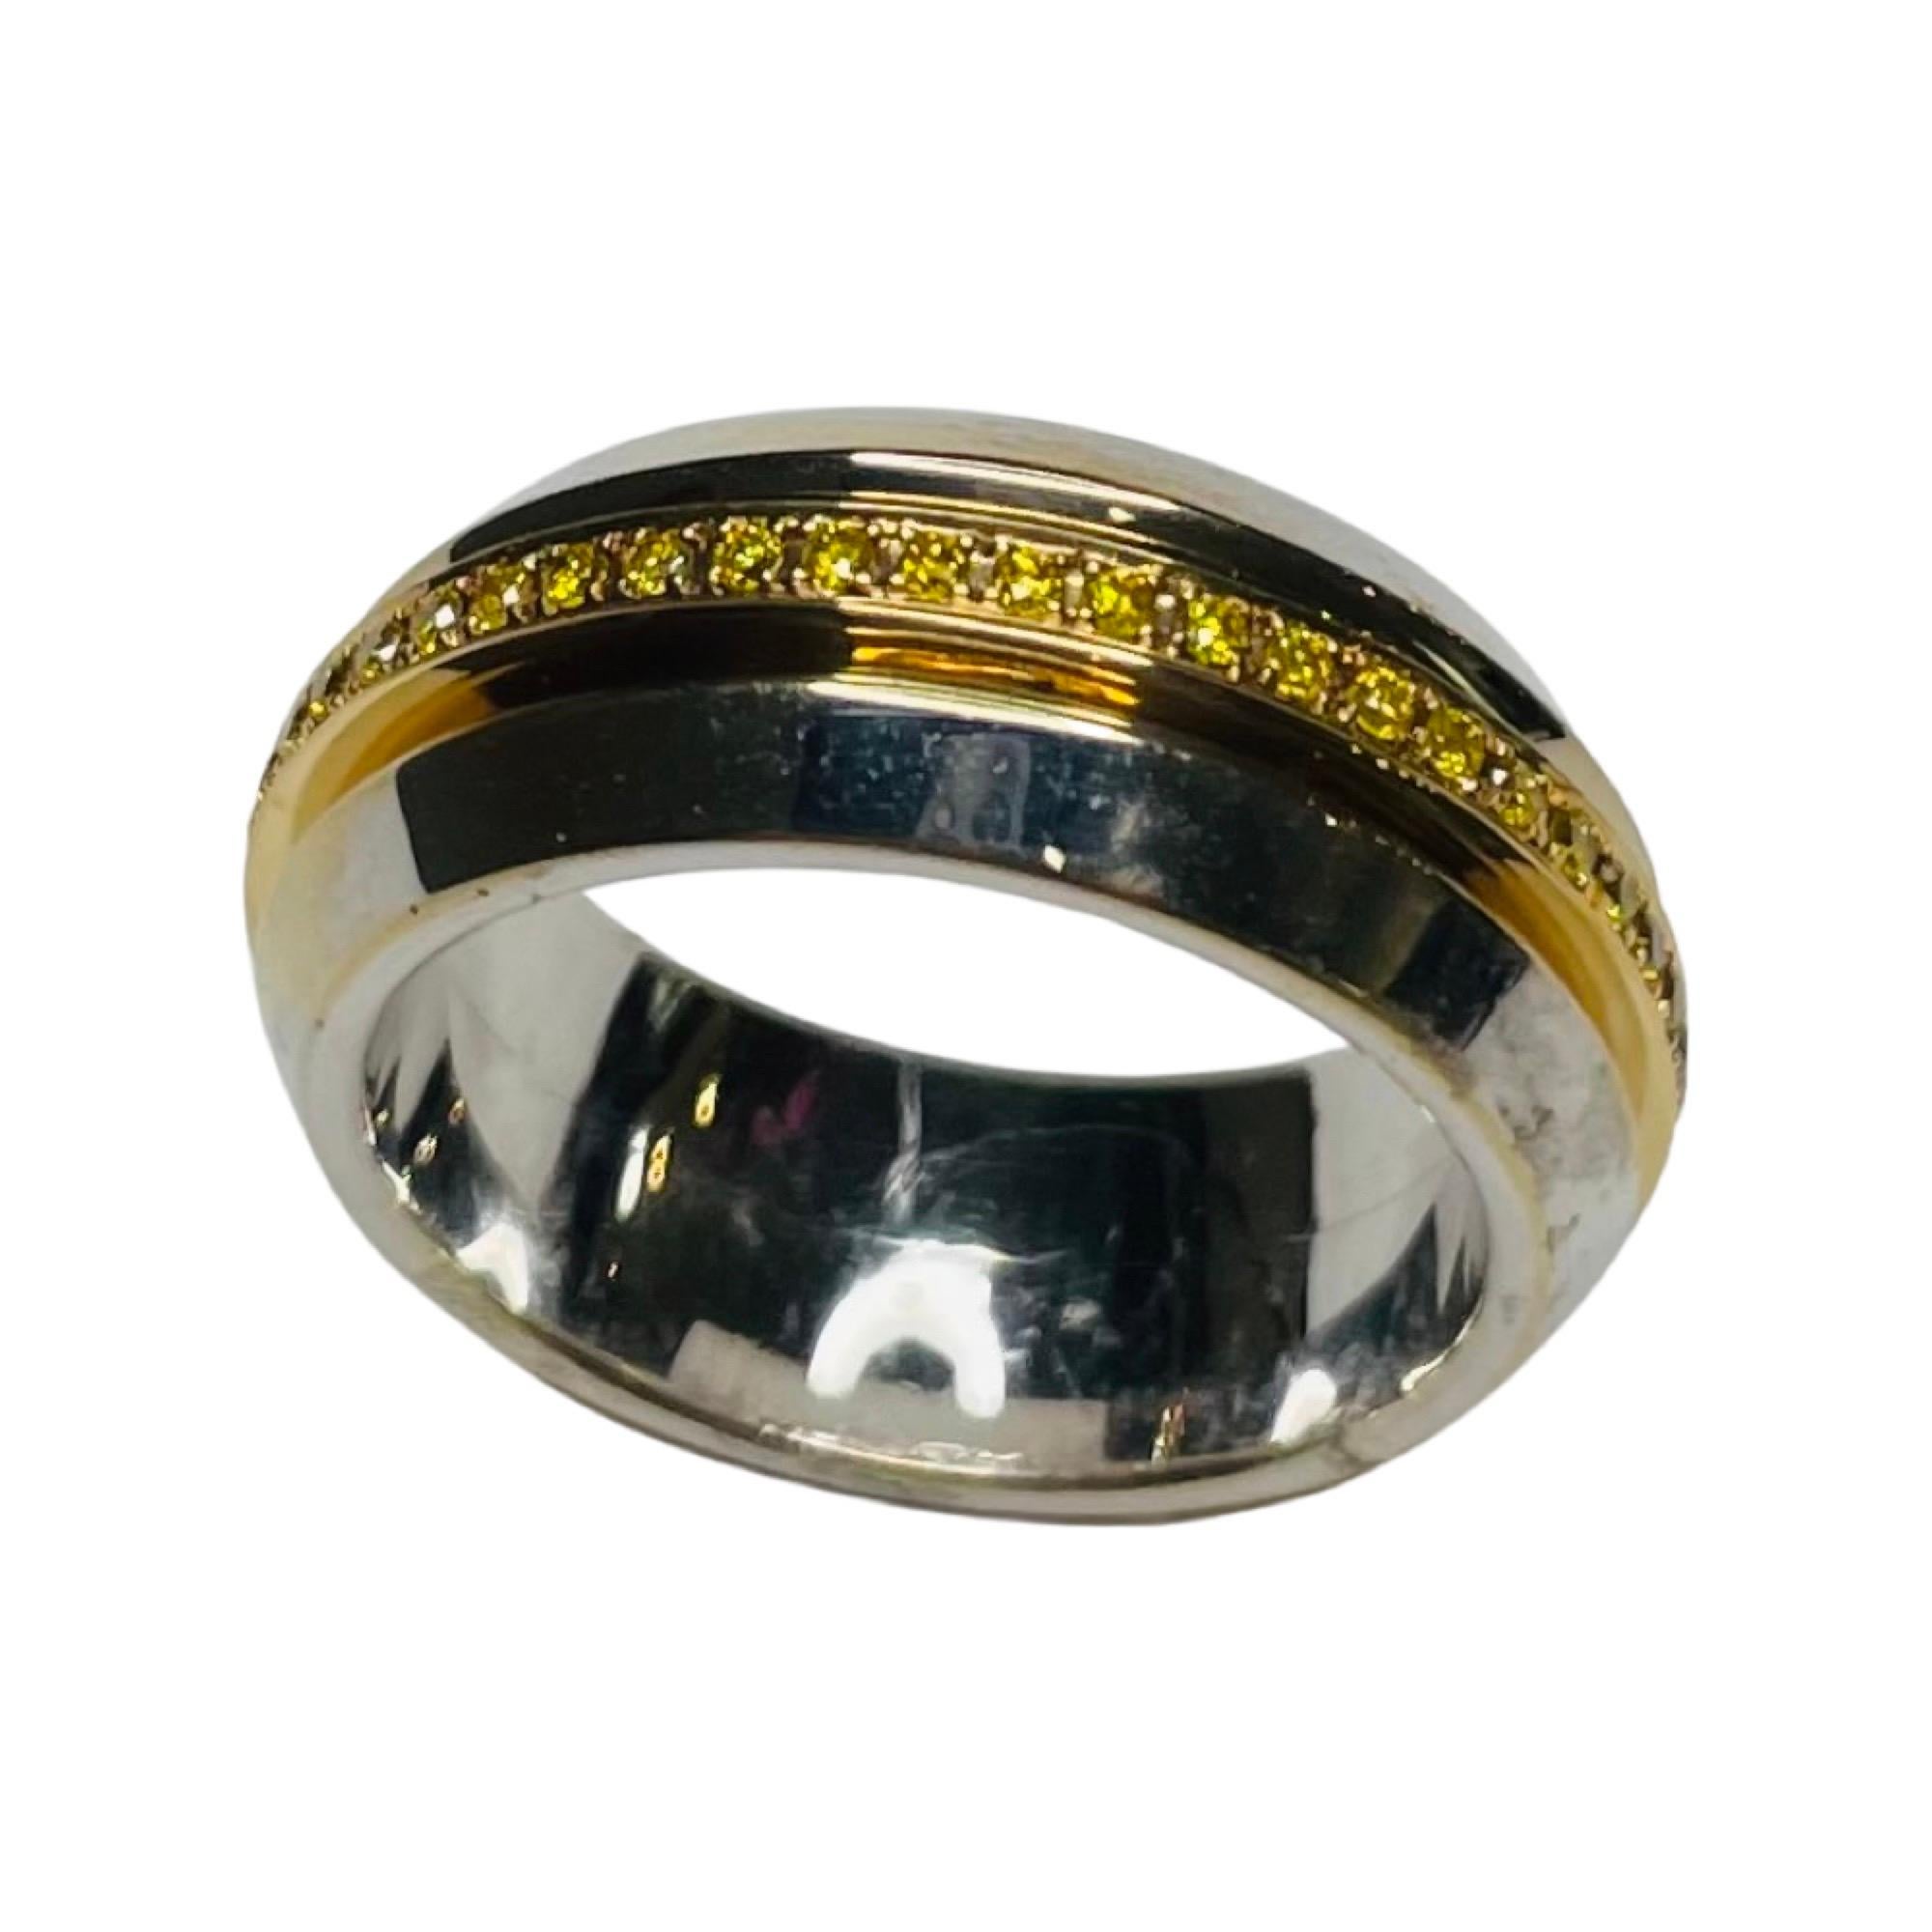 Alan Friedman 18K Weiß & Gelbgold Diamantring. 50 natürliche, intensiv gelbe Diamanten sind in ein Band aus 18 Karat Gold gefasst, das sich im Inneren des Weißgoldbandes dreht. Der Diamant hat ein Gesamtgewicht von 0,35 Karat. Das Band ist 8,1 mm